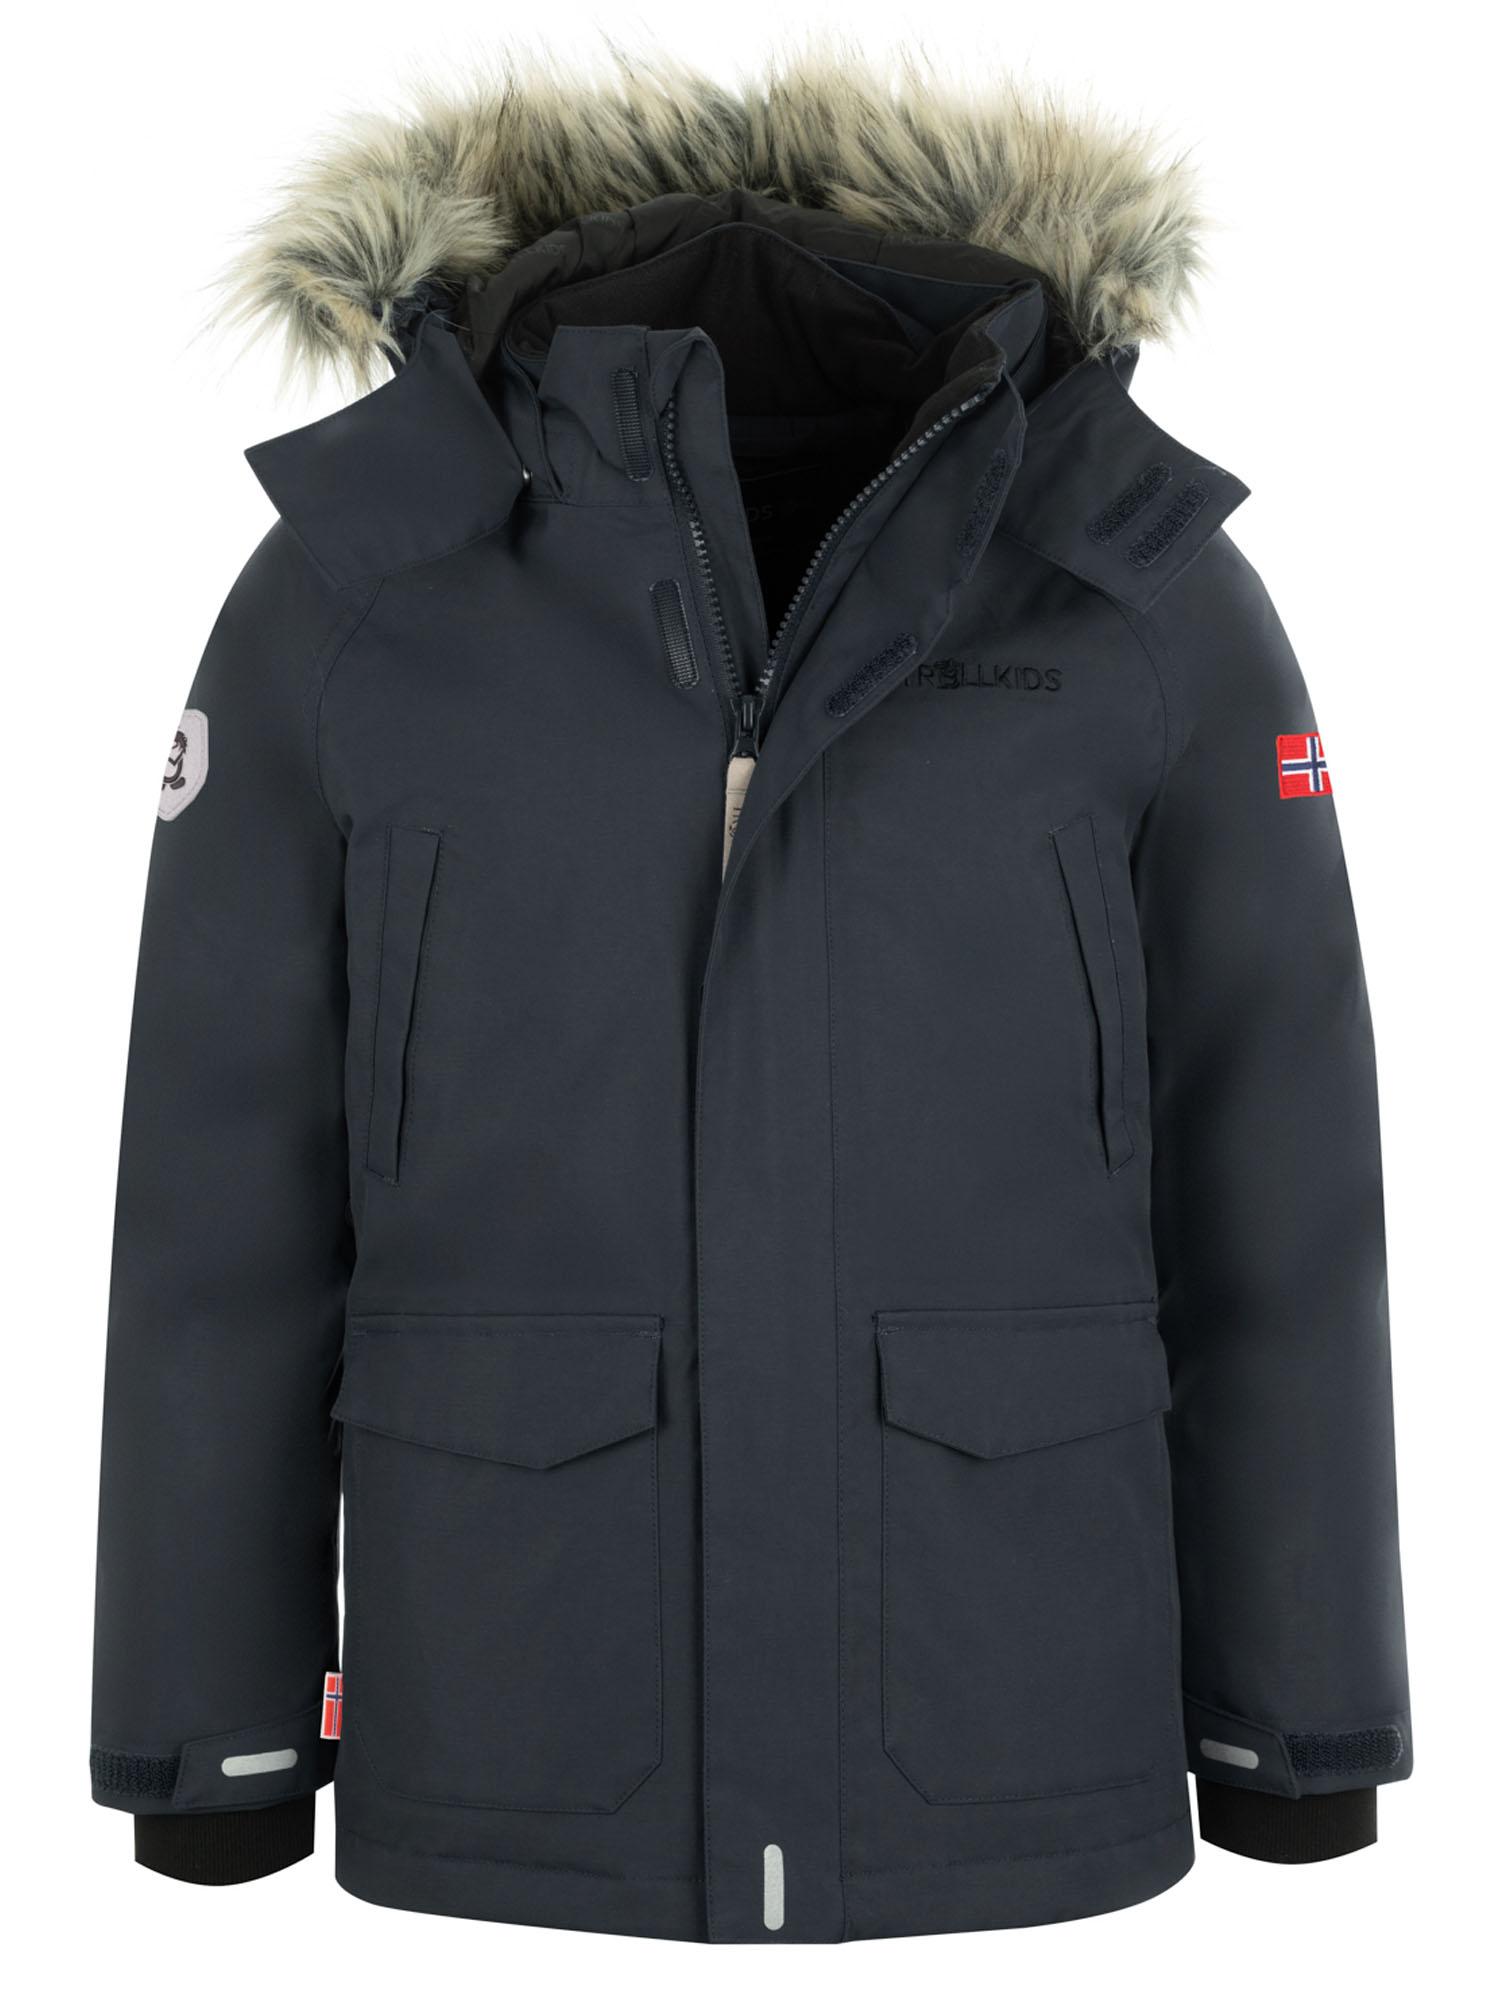 Куртка Детская Trollkids Spitsbergen Anthracite (Рост:110) куртка allsport vancouver 2219 anthracite